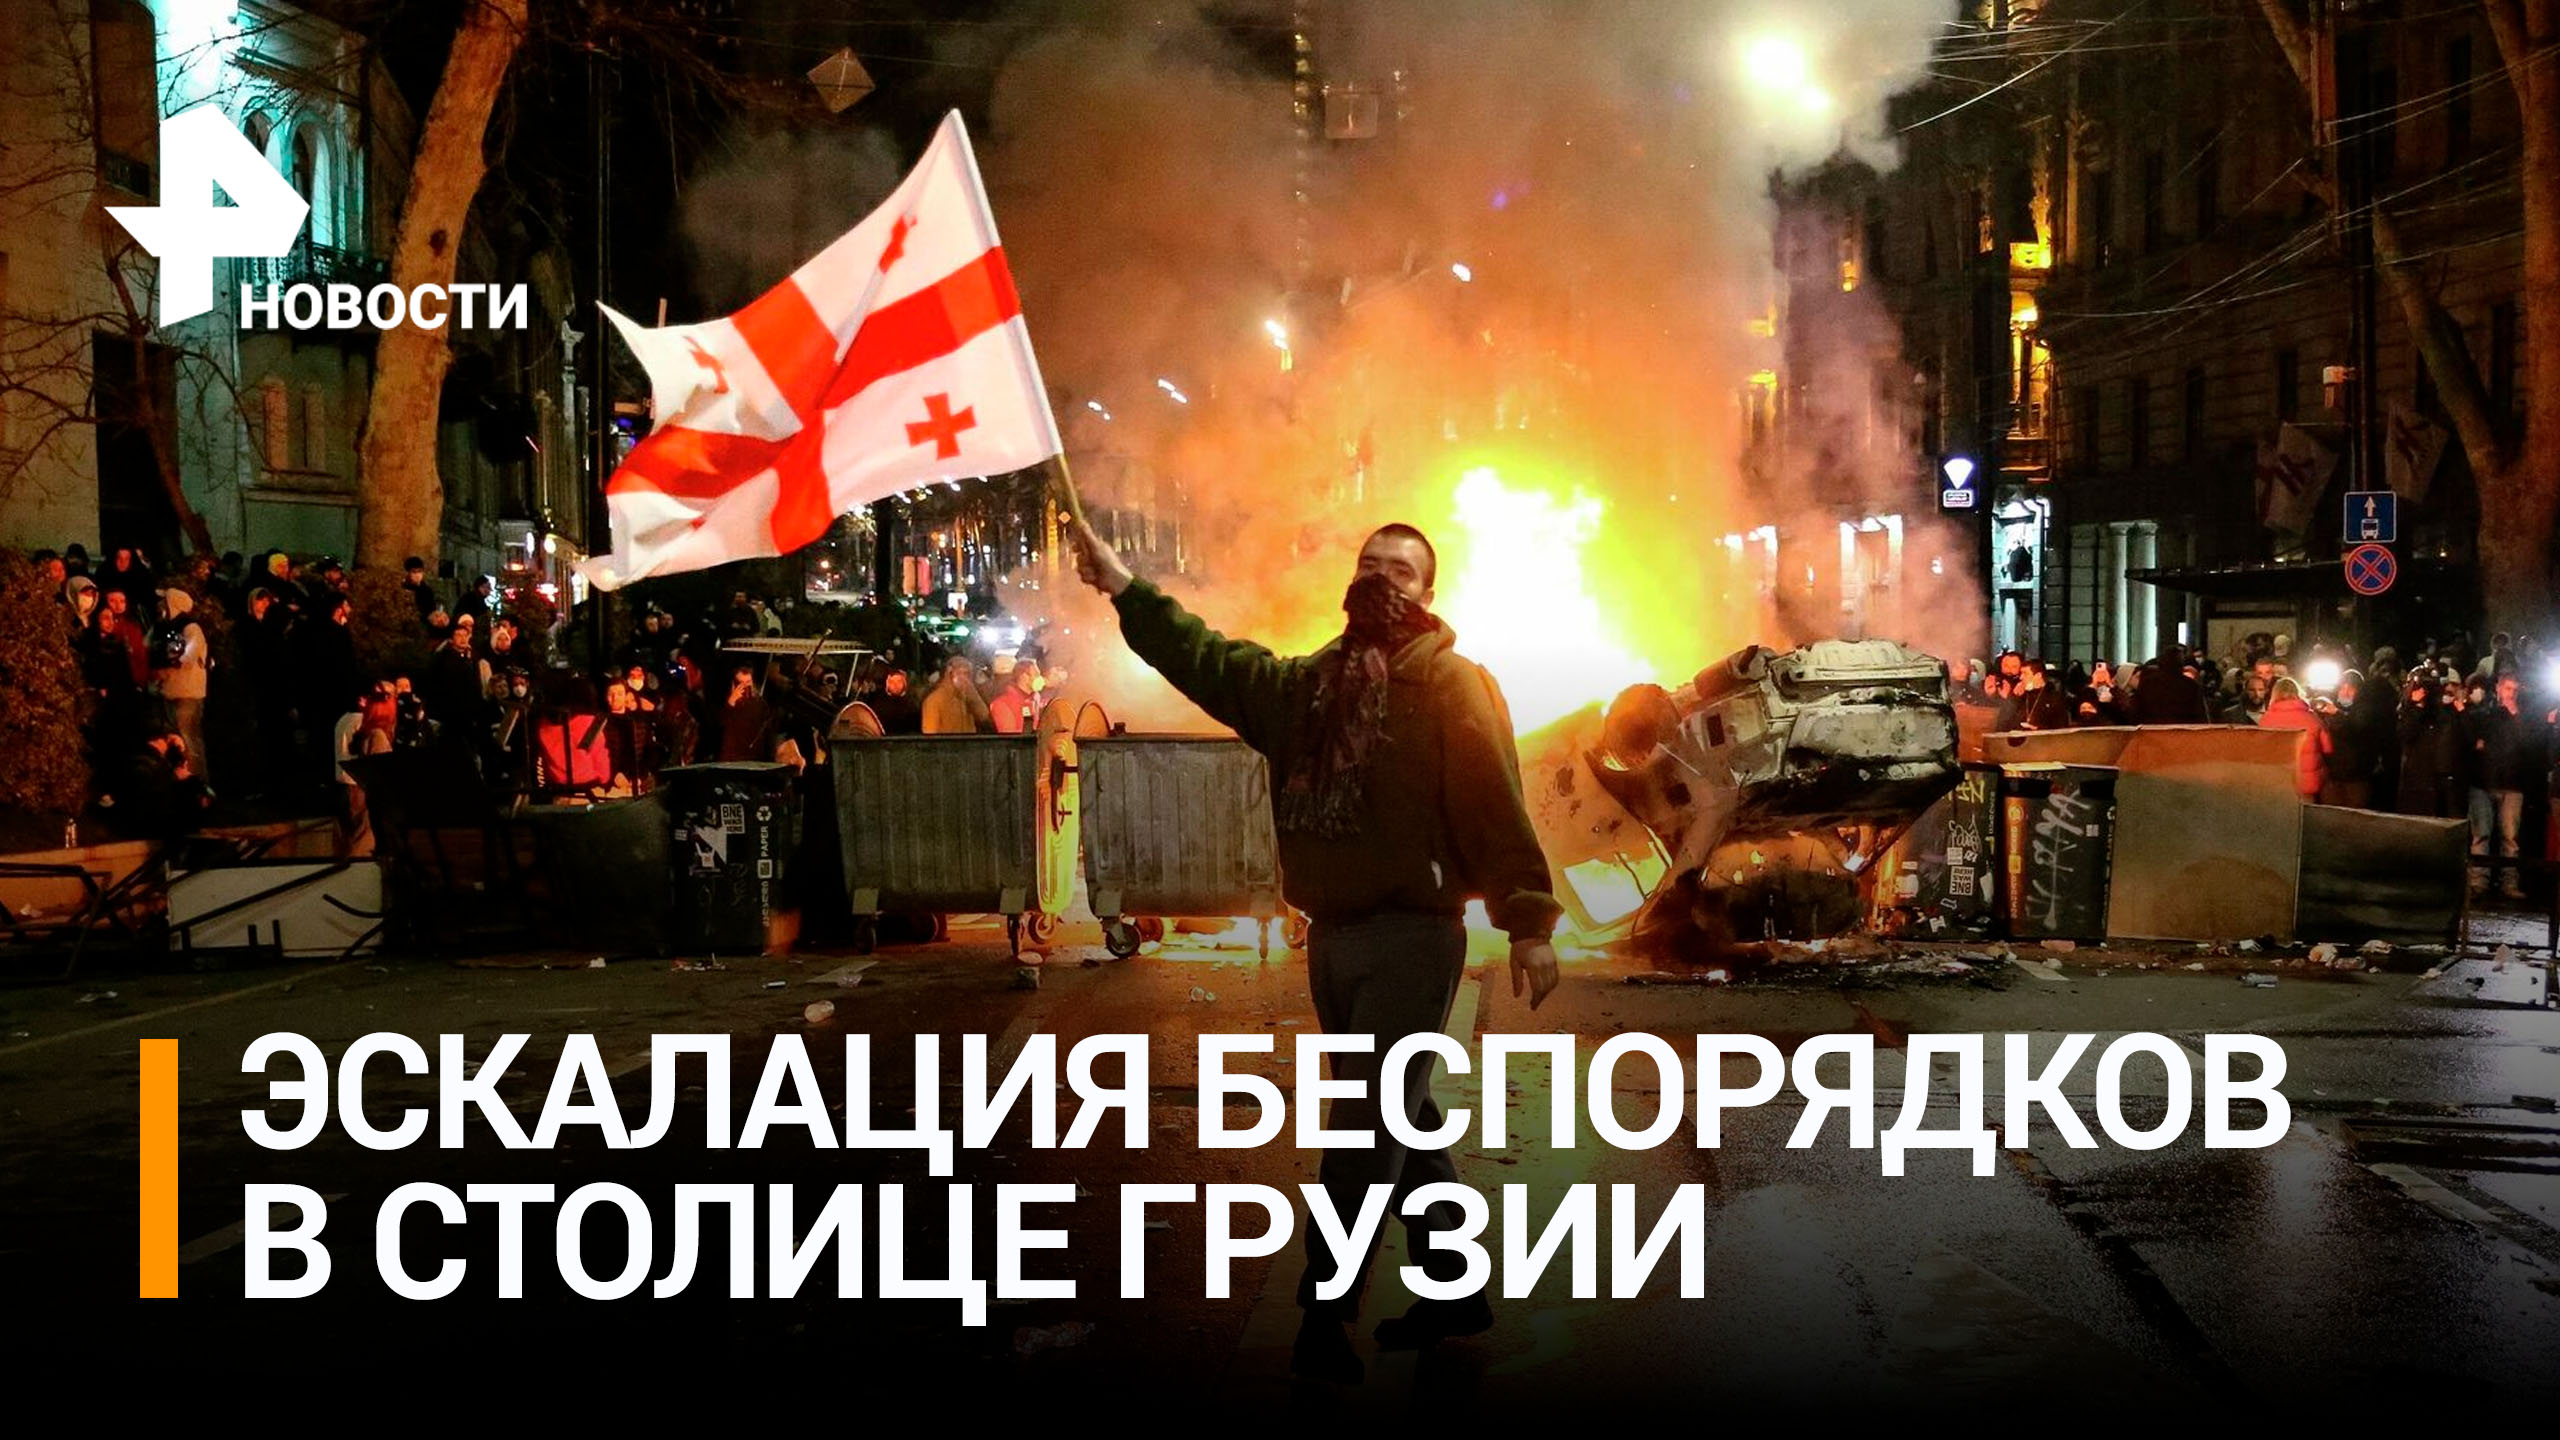 Язык ультиматума: что скрывается за протестами в Грузии / РЕН Новости